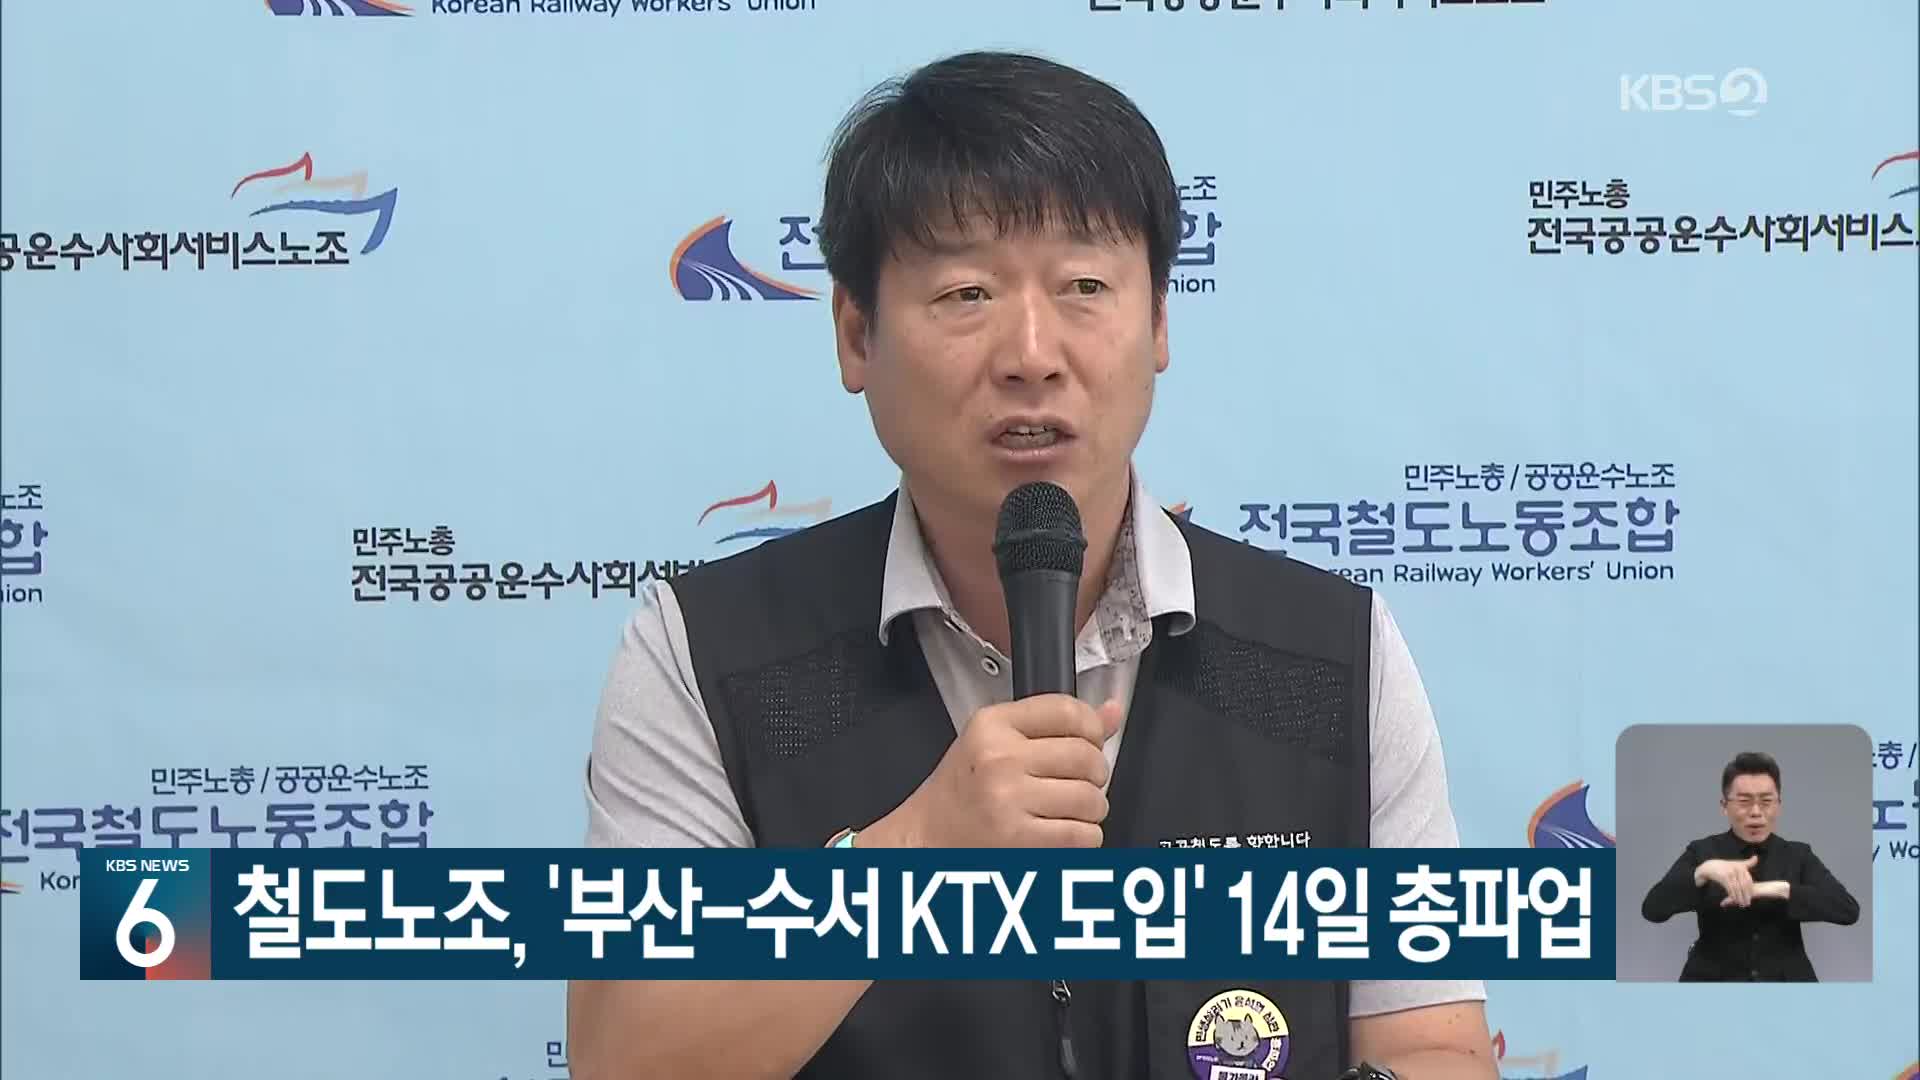 철도노조, ‘부산-수서 KTX 도입’ 14일 총파업